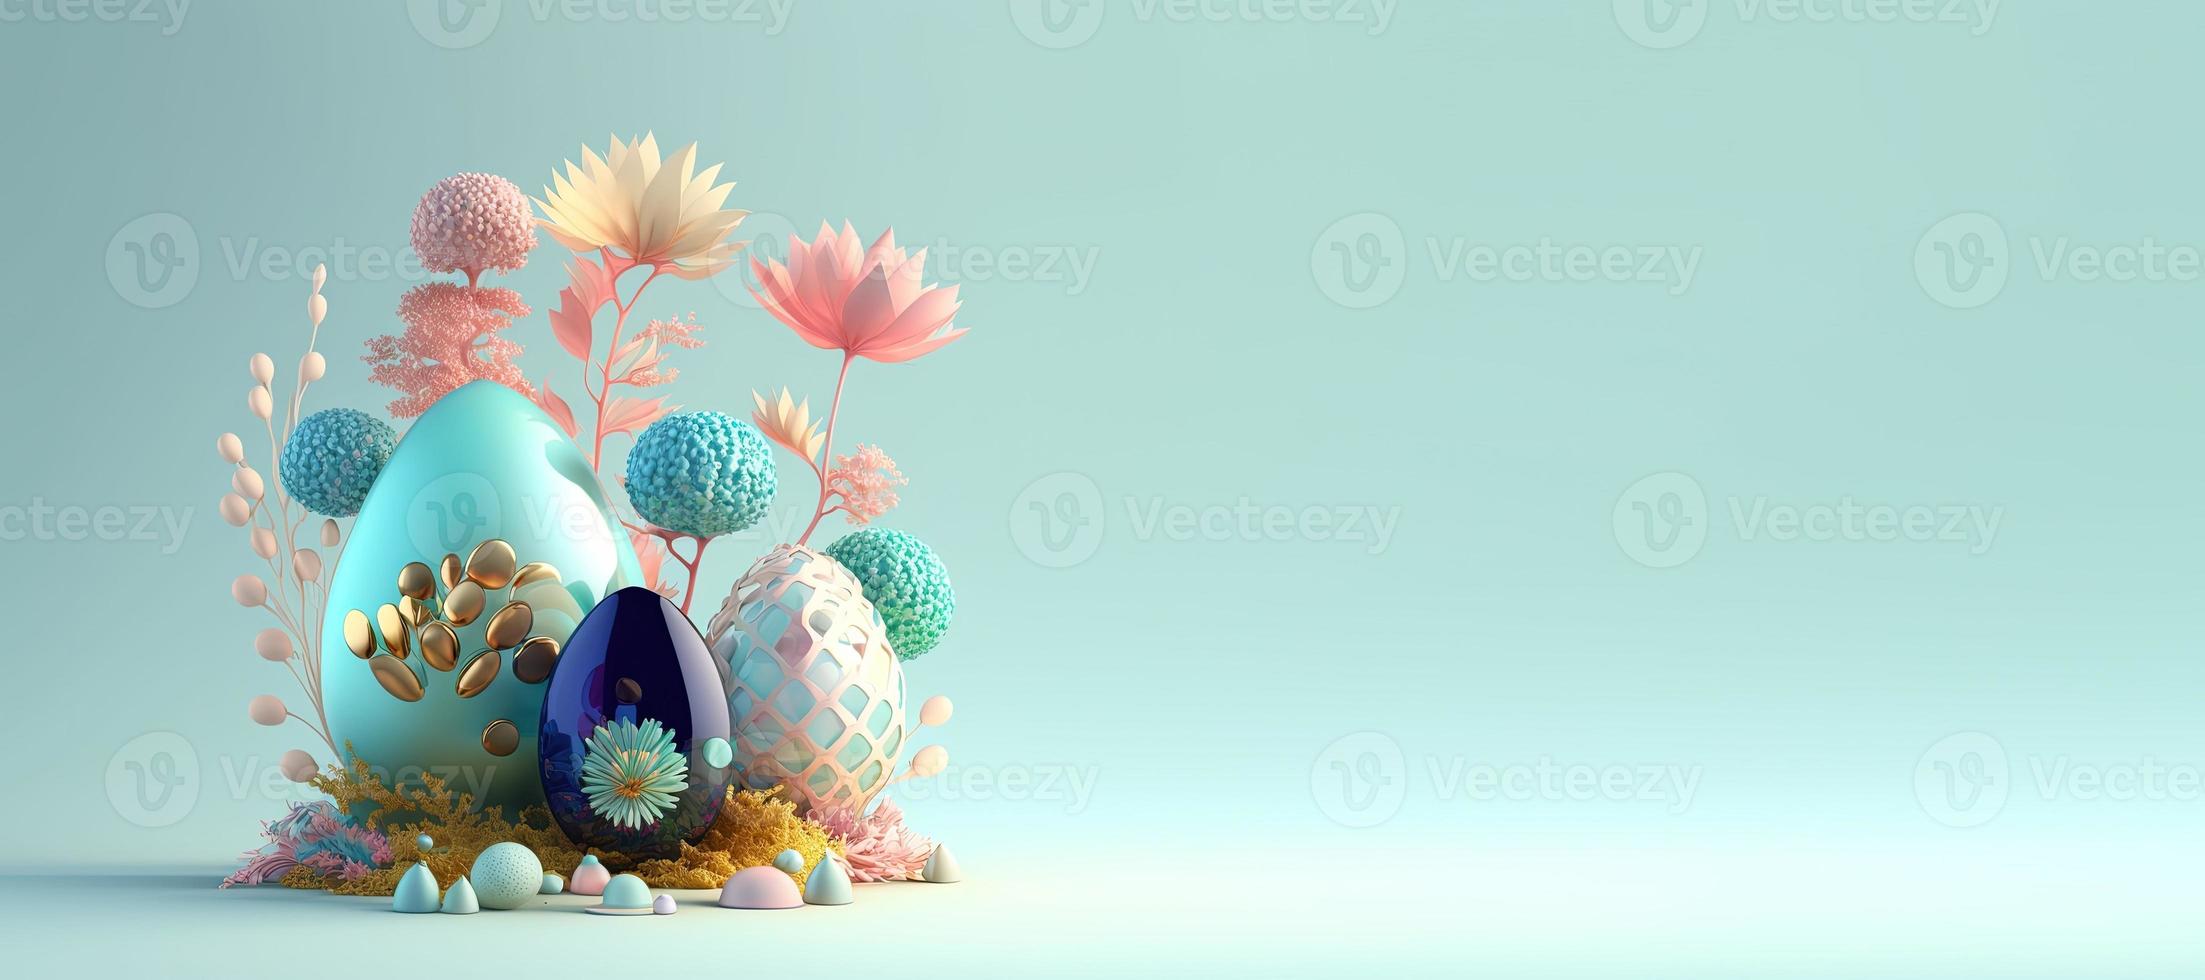 Renderização 3D de ovos de páscoa e flores com um tema do país das maravilhas de fantasia para banner foto